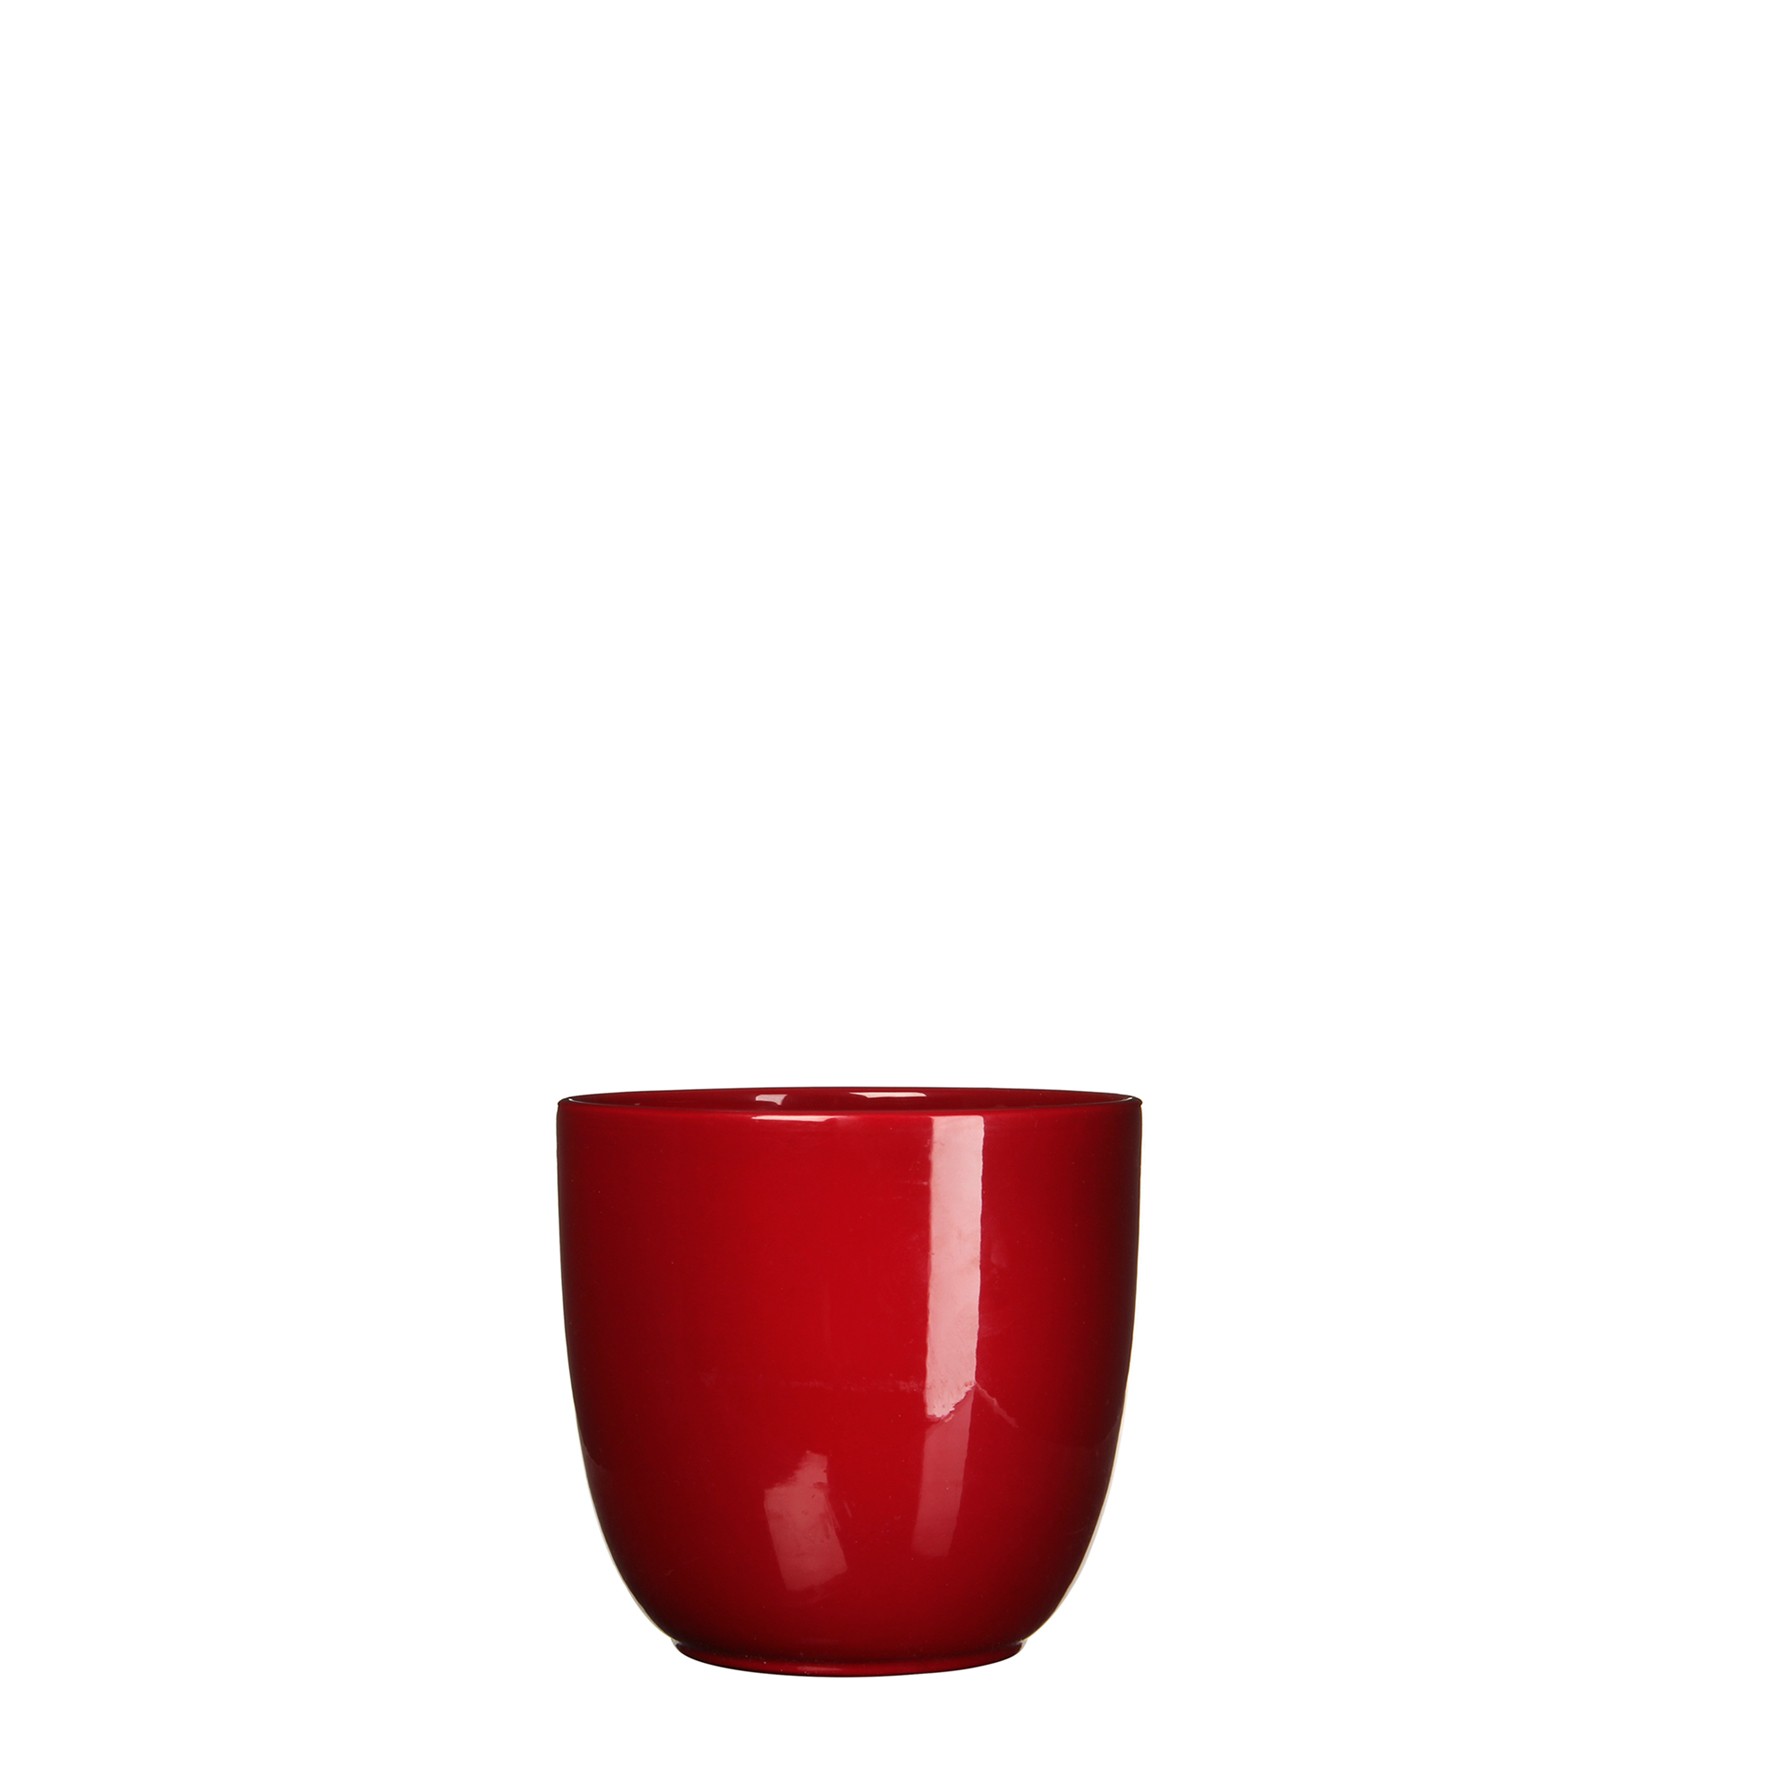 Bloempot Pot rond es/10.5 tusca 11 x 12 cm d.rood Mica